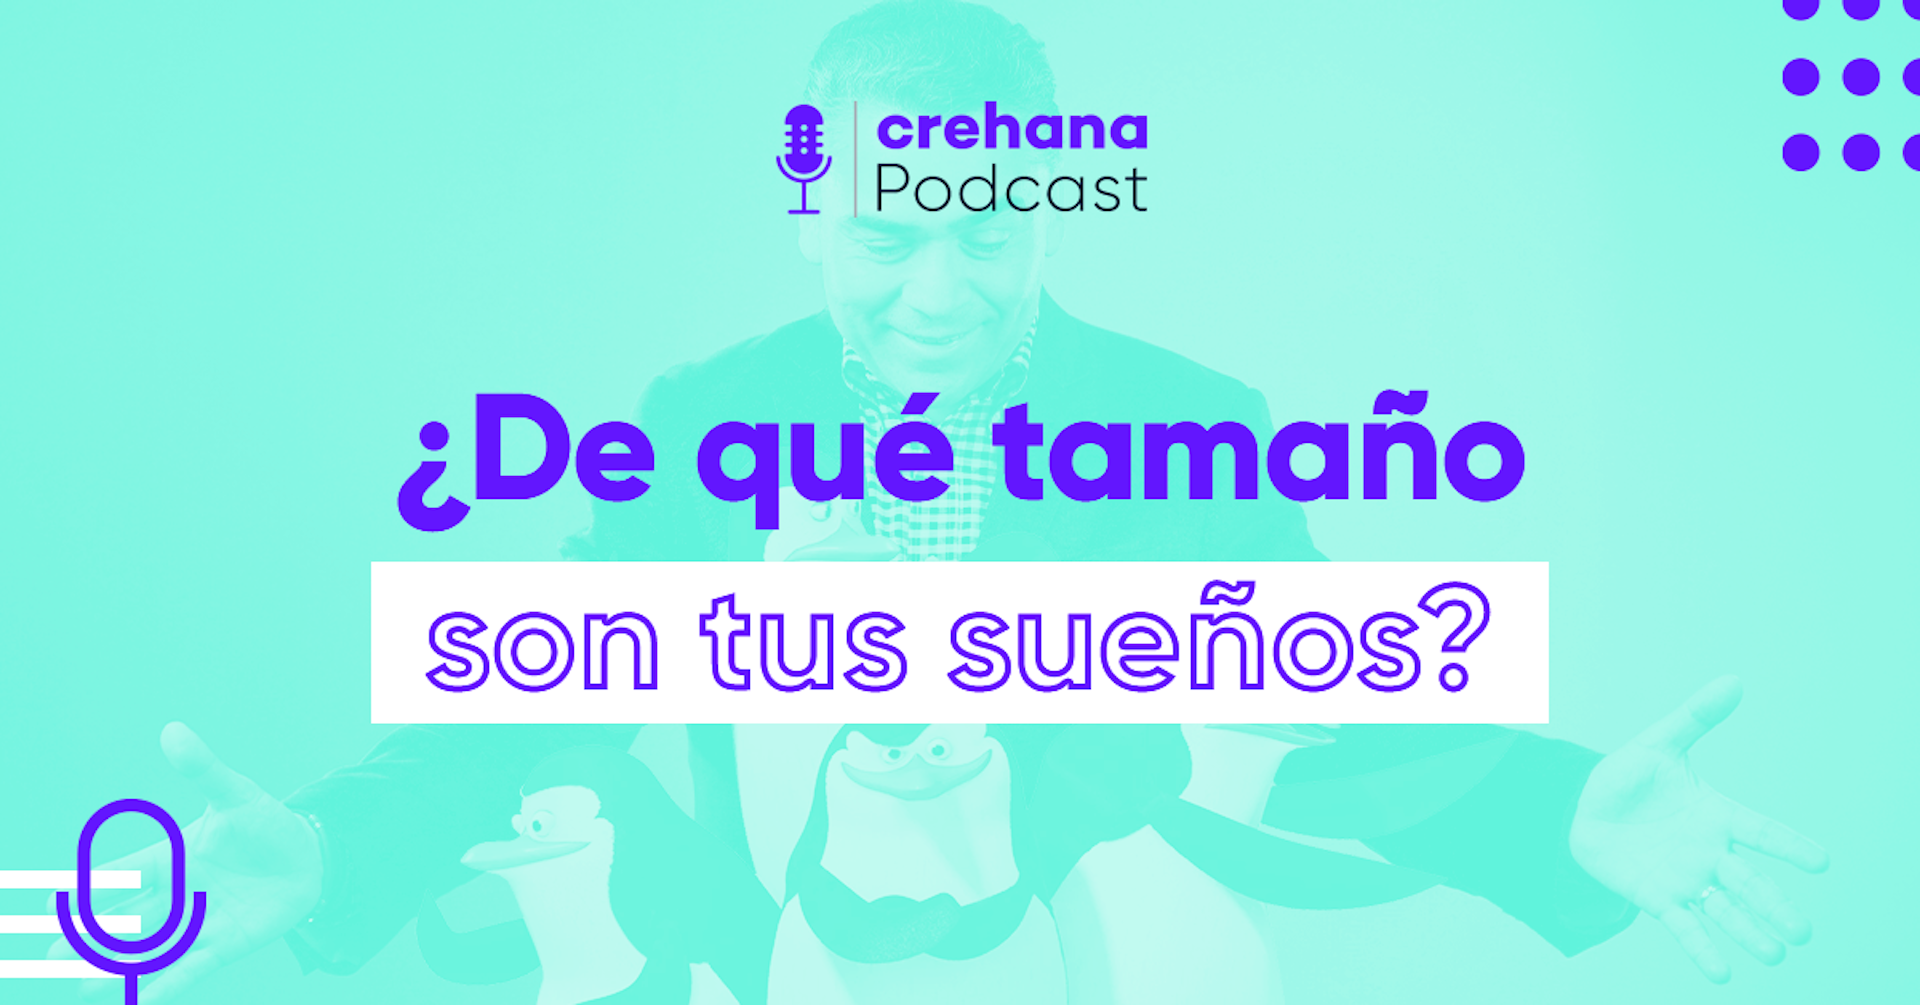 Crehana Podcast: ¿De qué tamaño son tus sueños? Con Mario Arvizu